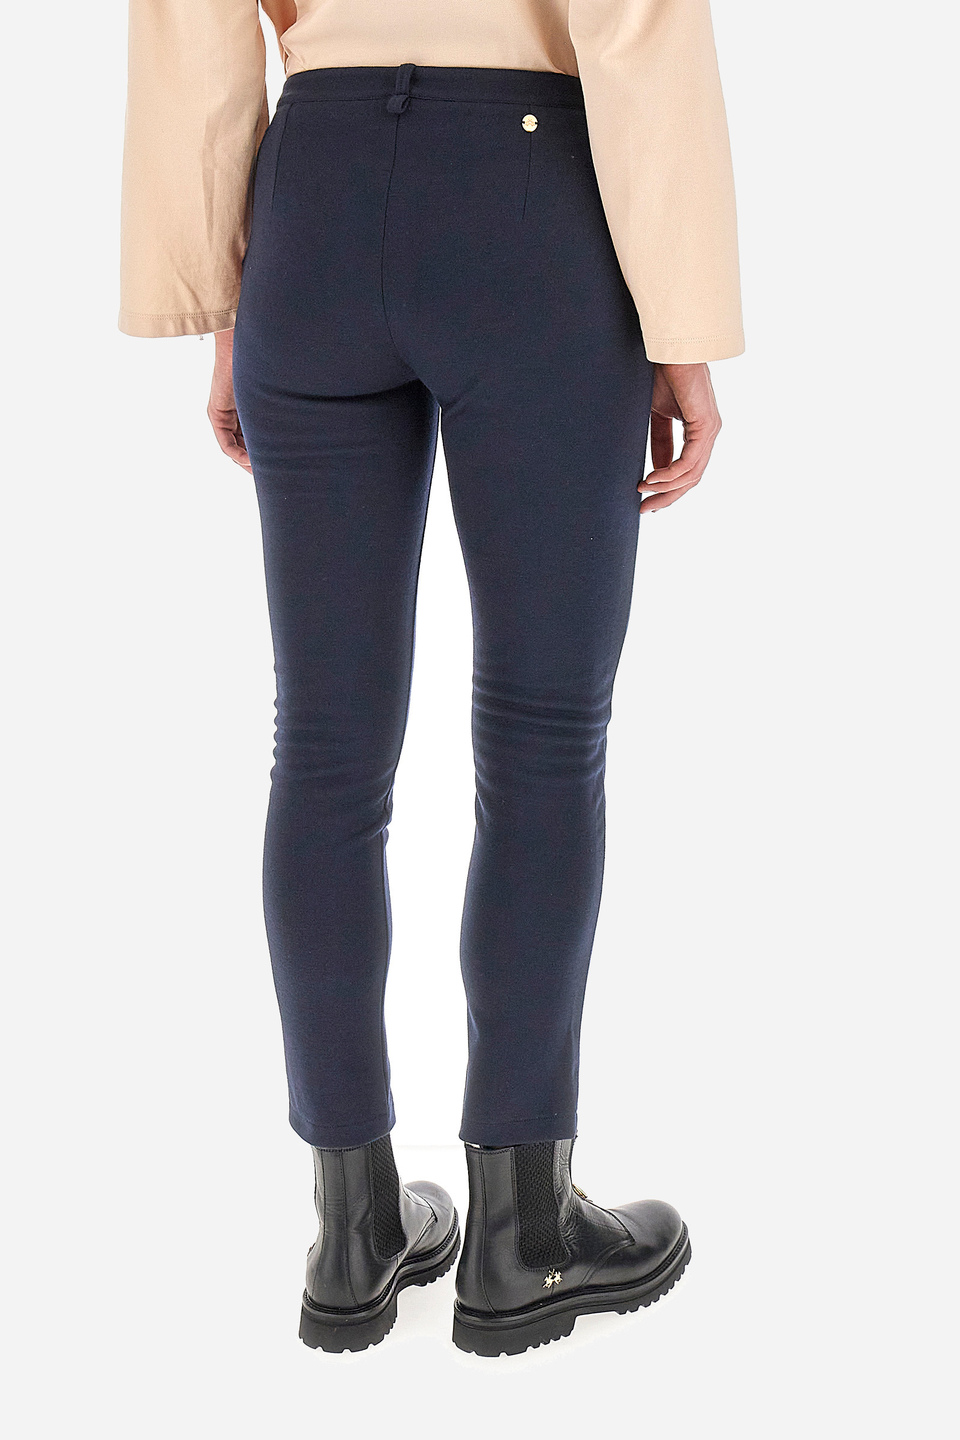 Pantalon femme coupe classique - Winter | La Martina - Official Online Shop